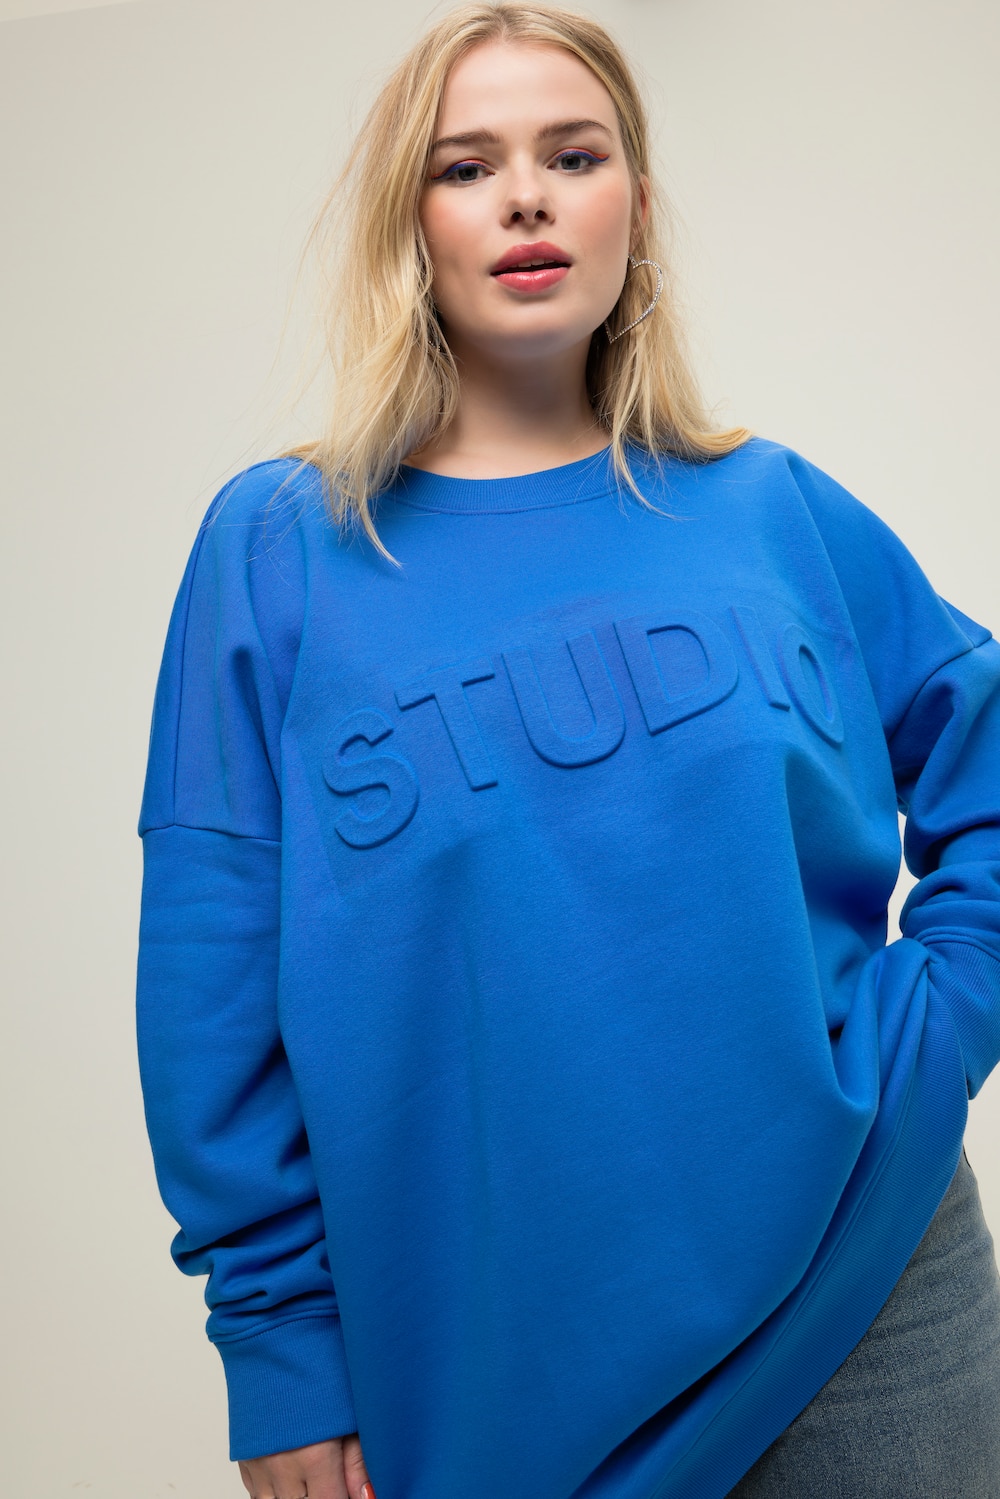 Grote Maten Sweatshirt, Dames, blauw, Maat: 46/48, Katoen/Polyester, Studio Untold